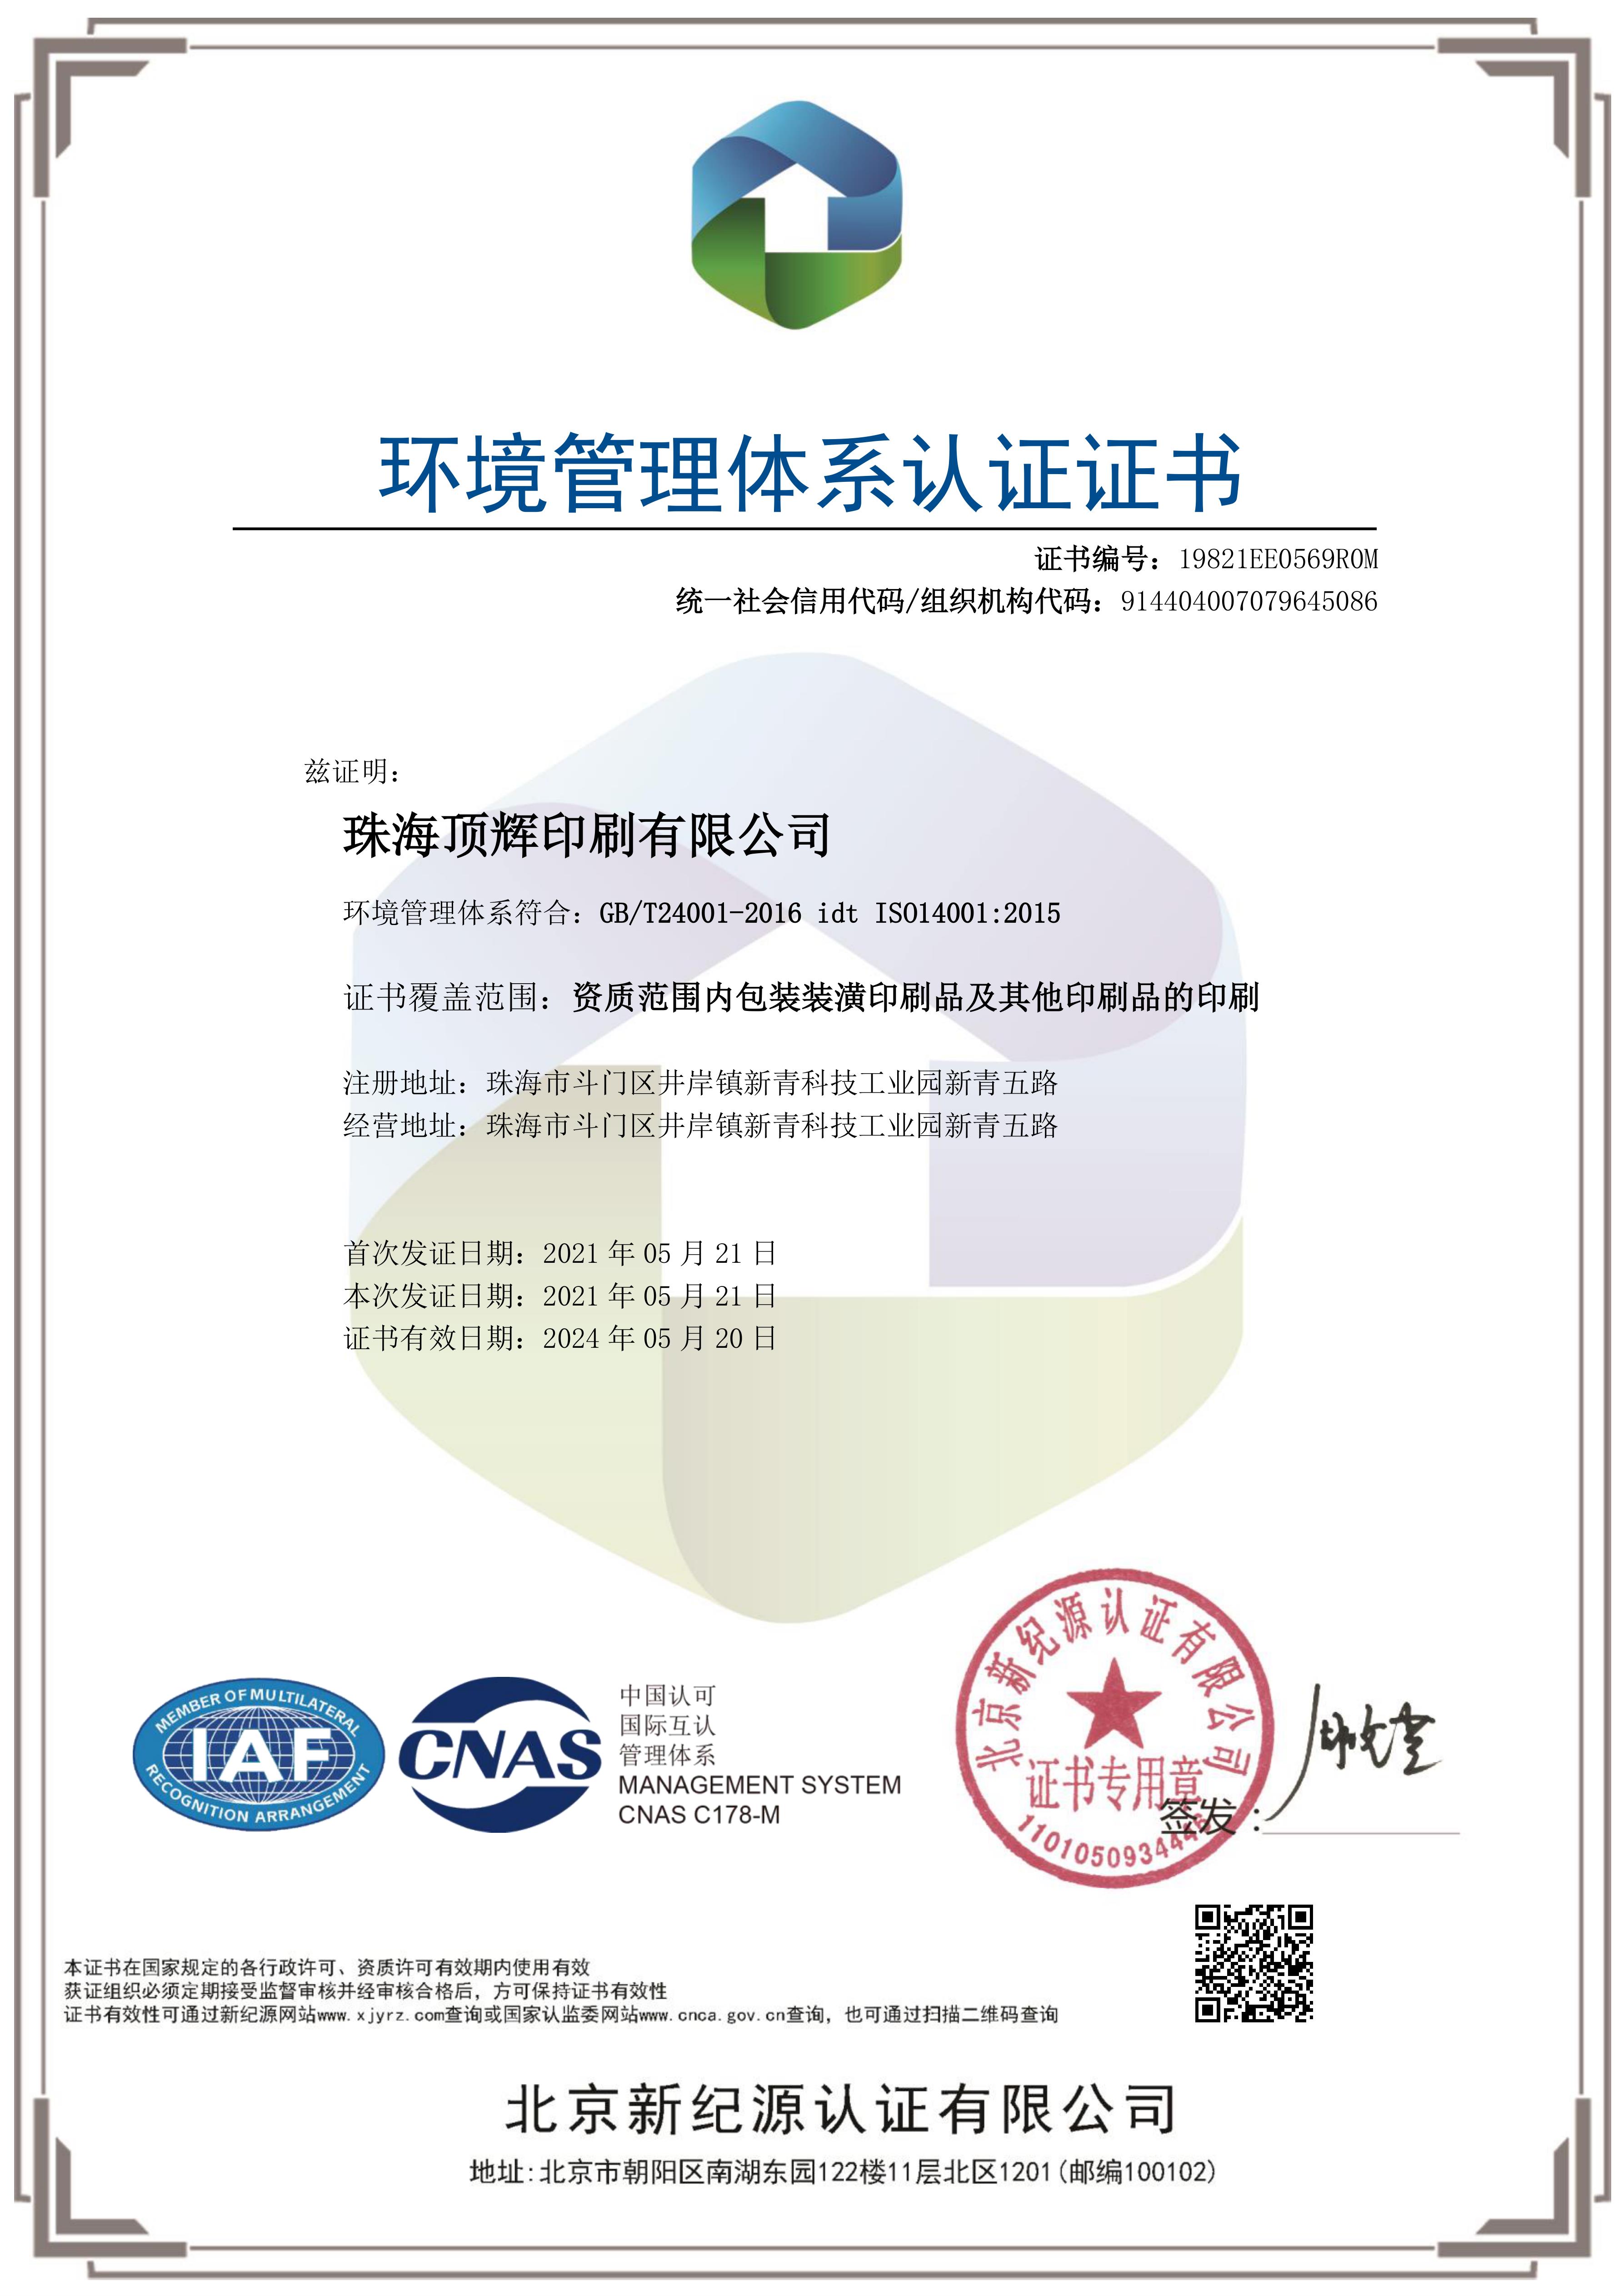 ISO14001 中文 2021.jpg